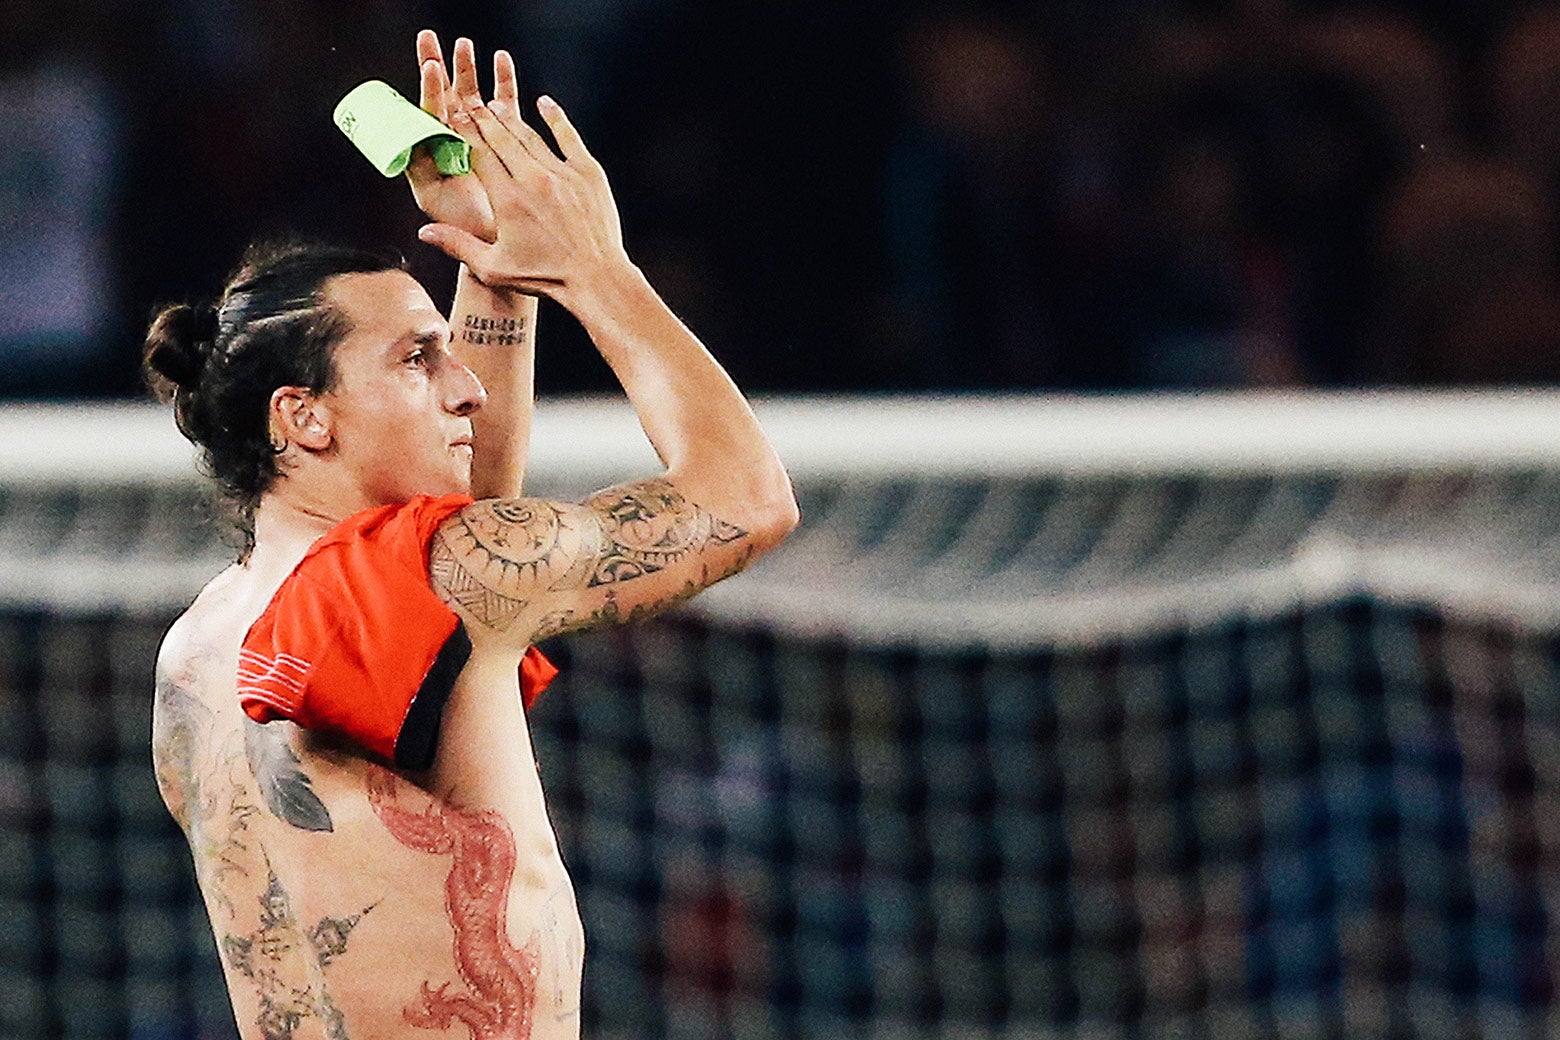 A dragon tattoo is seen along Zlatan Ibrahimovic’s torso.